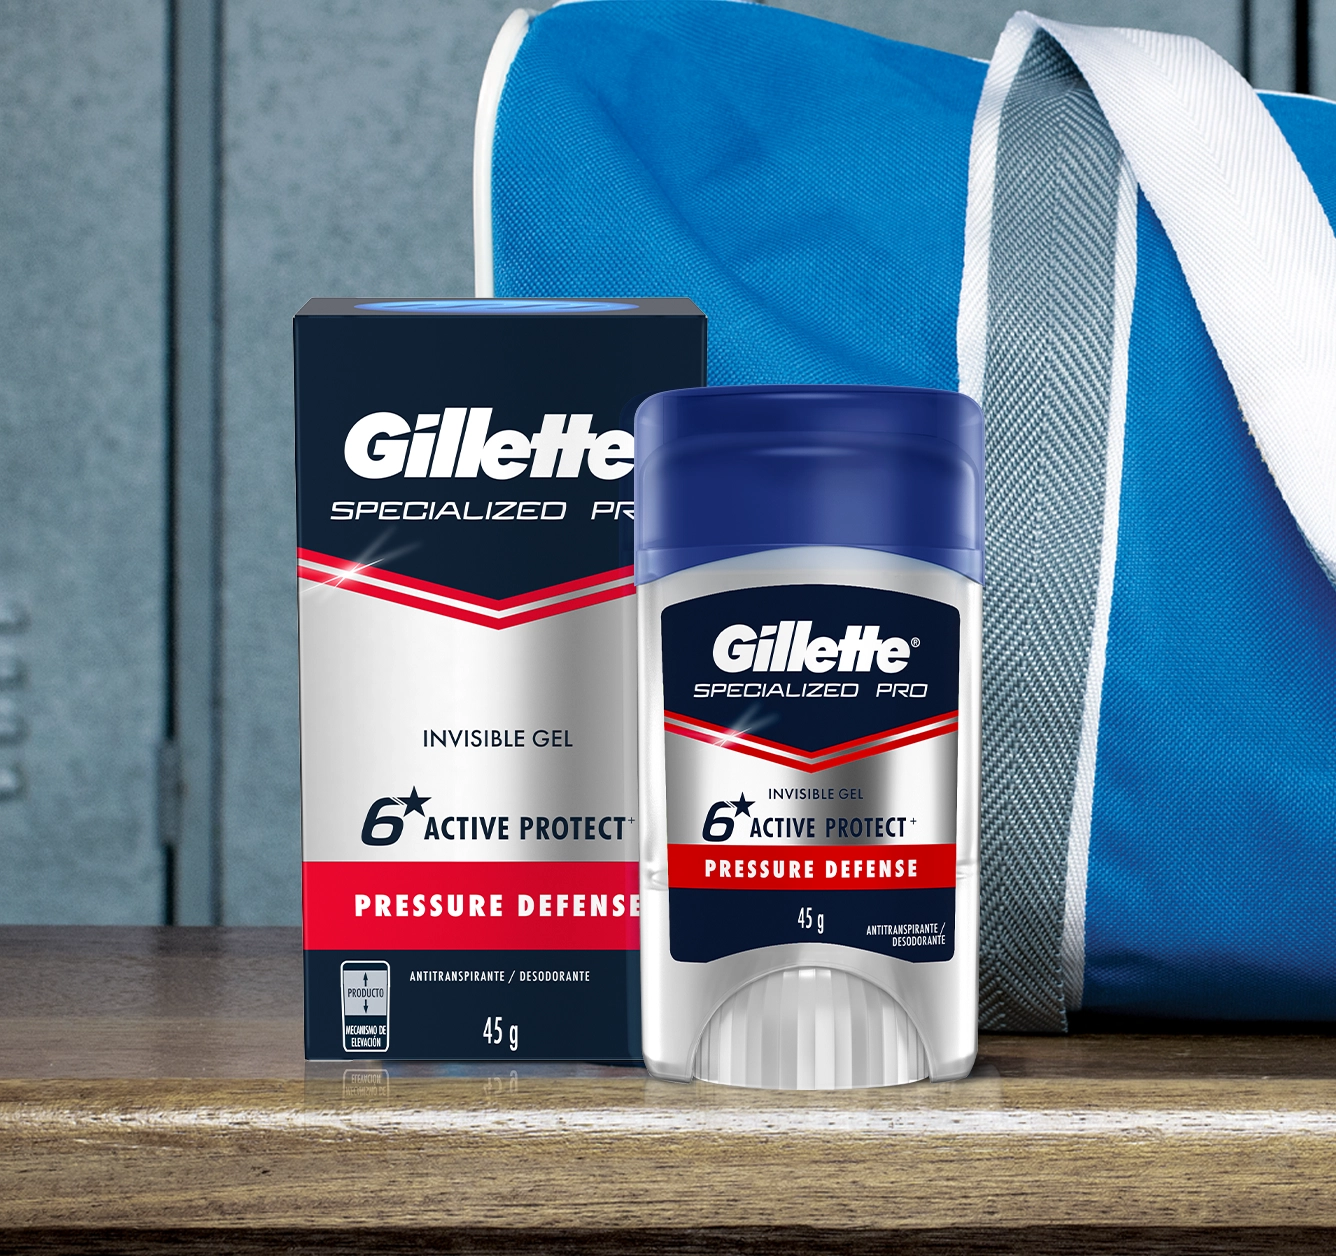 Gillette® Specialized Pro Gel Pressure Defense